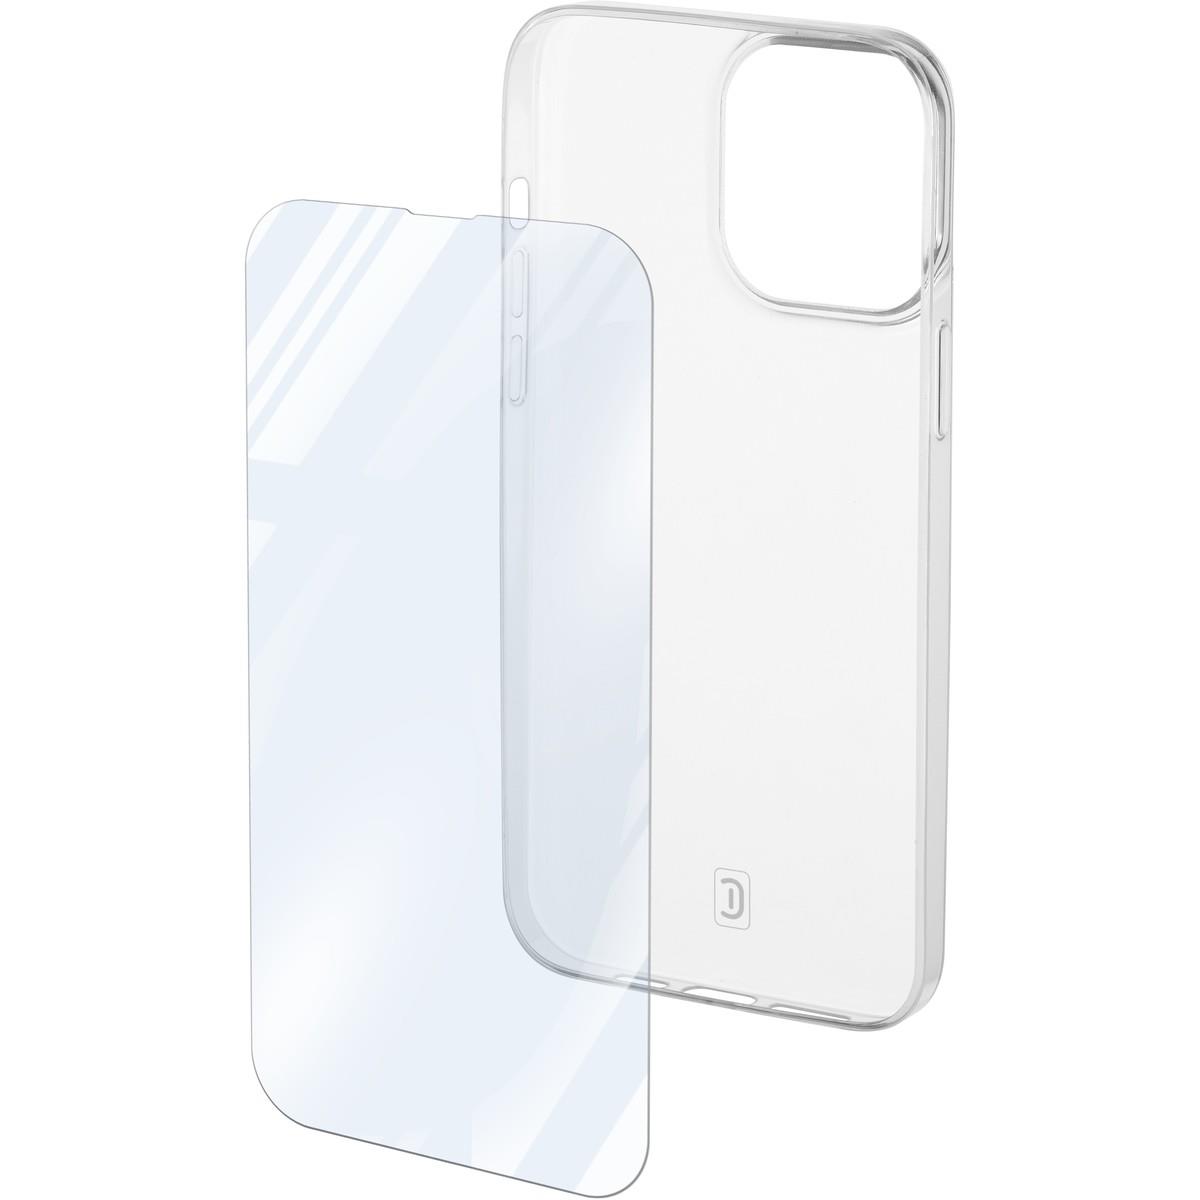 Set PROTECTION KIT aus Backcover und Schutzglas für Apple iPhone 14